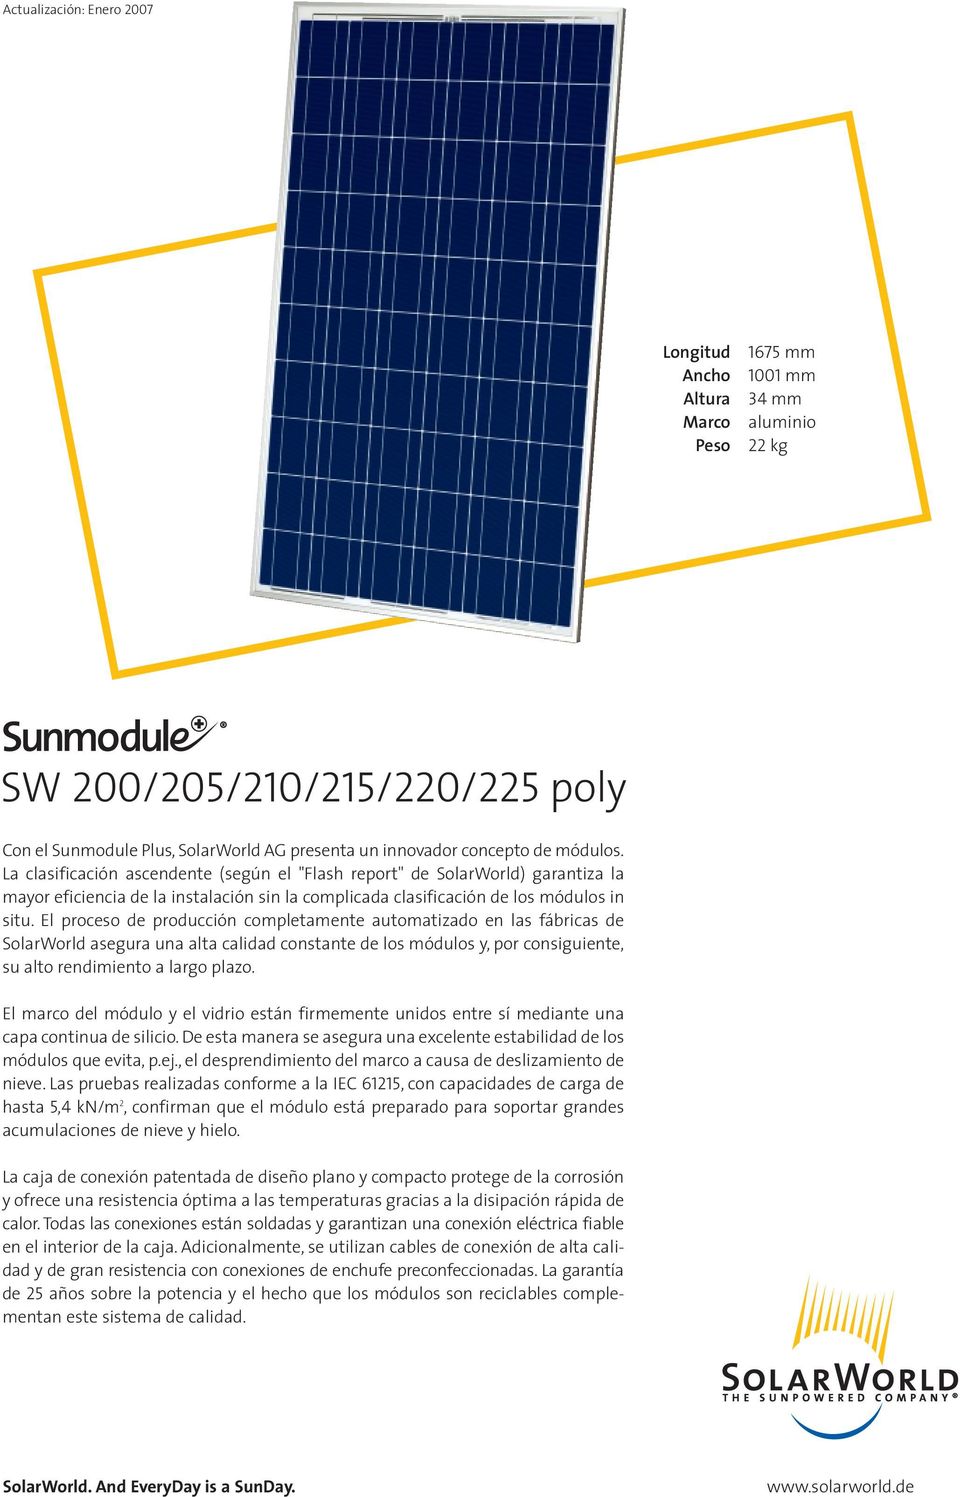 El proceso de producción completamente automatizado en las fábricas de SolarWorld asegura una alta calidad constante de los módulos y, por consiguiente, su alto rendimiento a largo plazo.